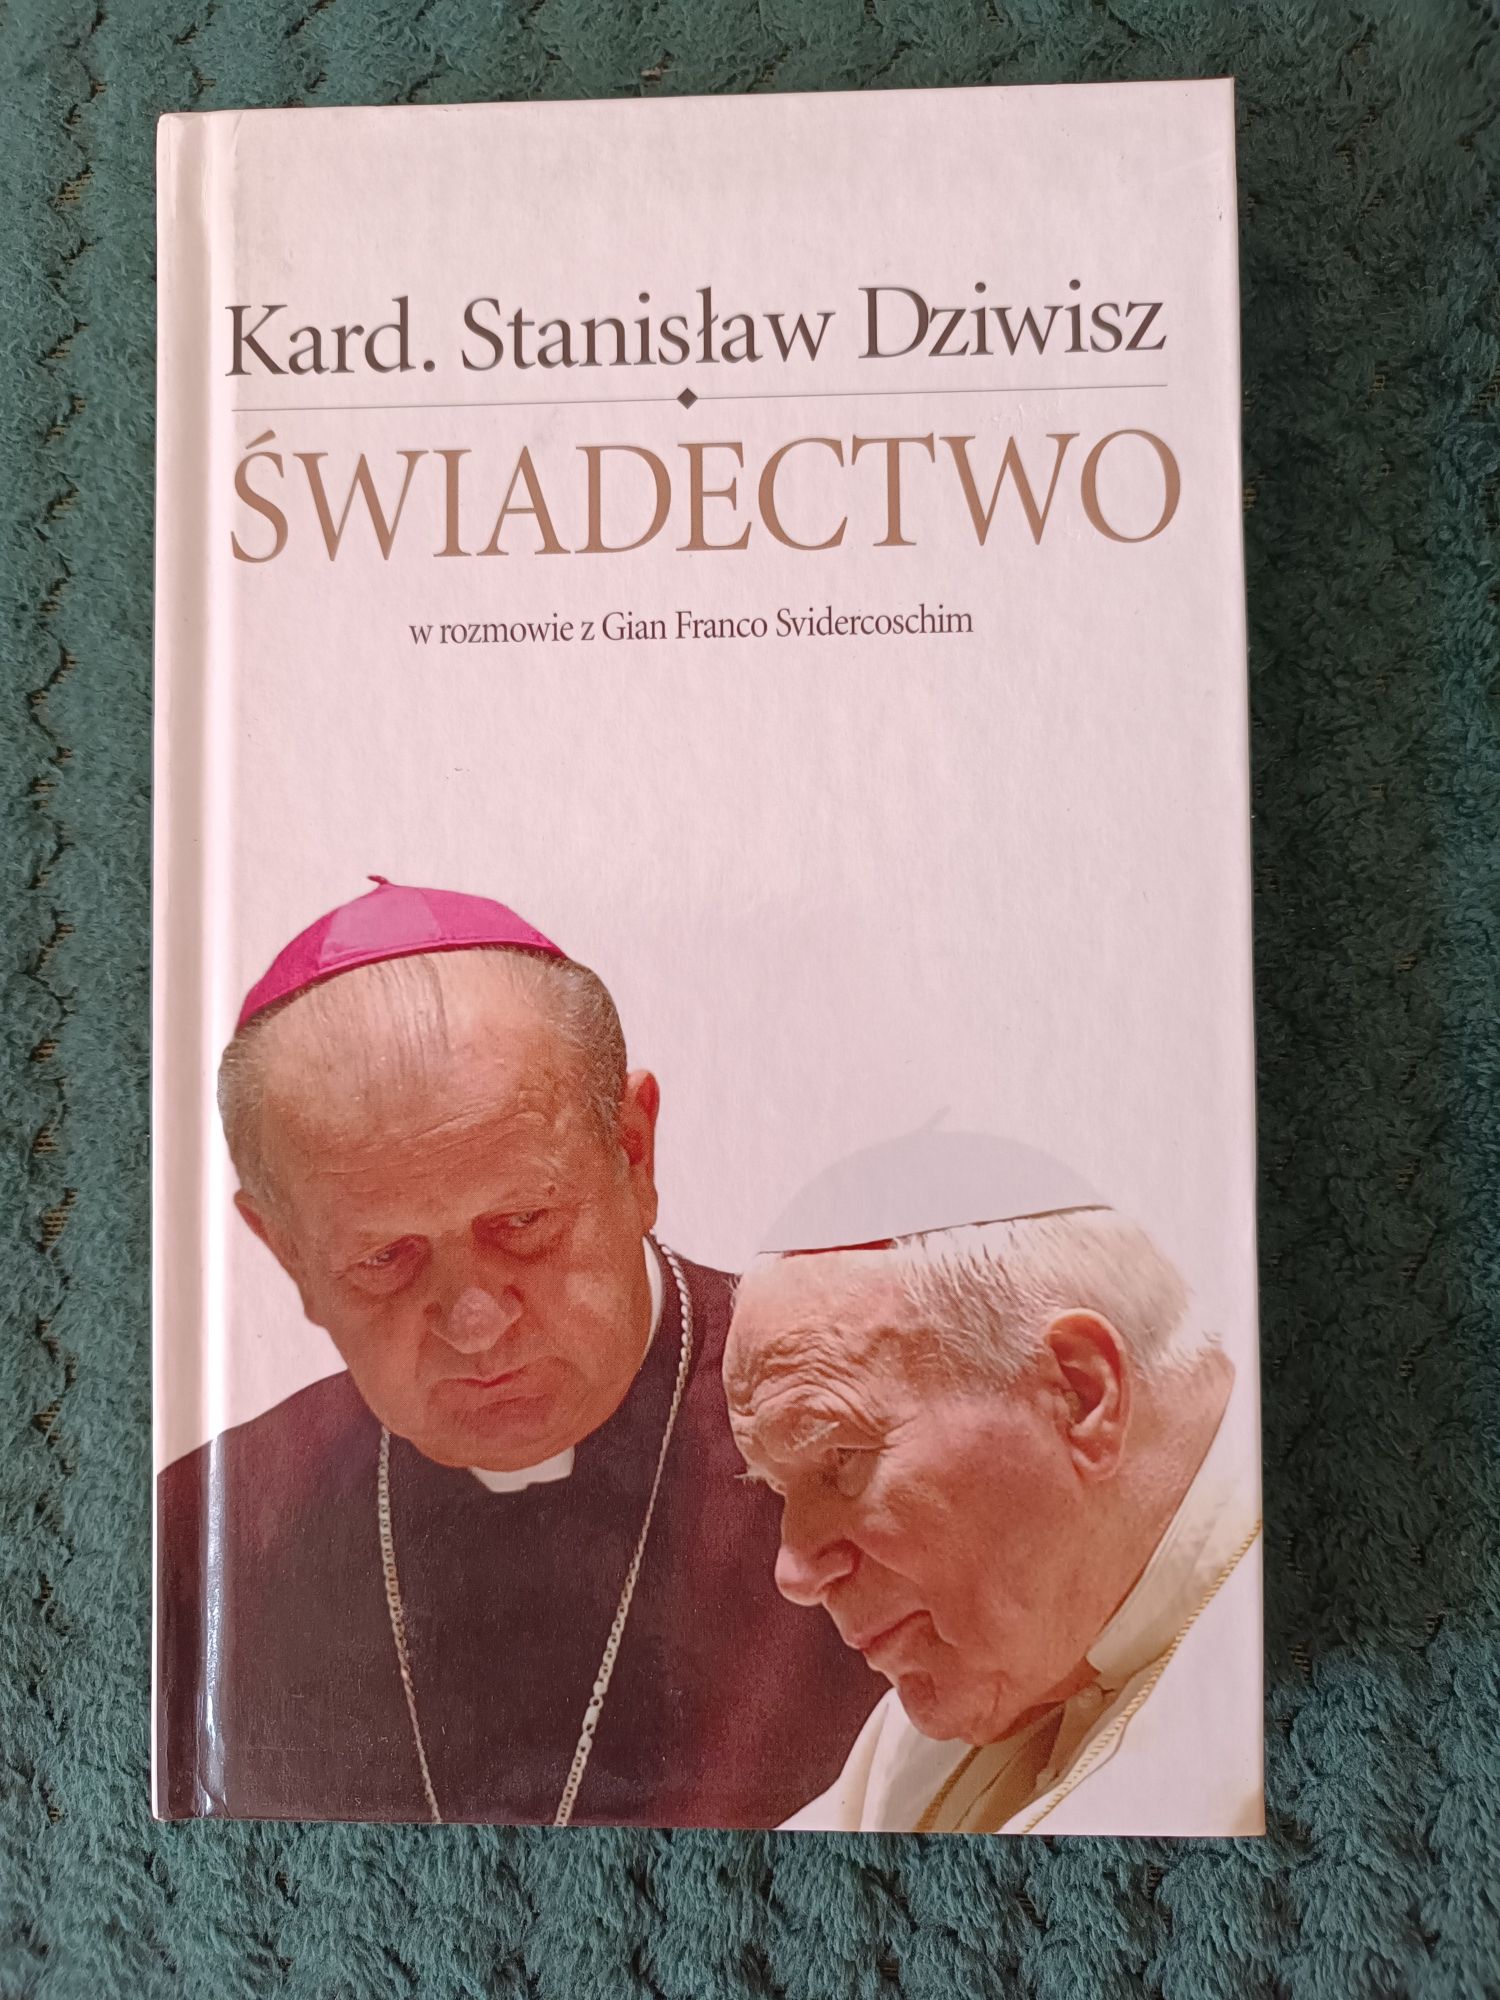 Kardynał Stanisław Dziwisz "Świadectwo" +gratis